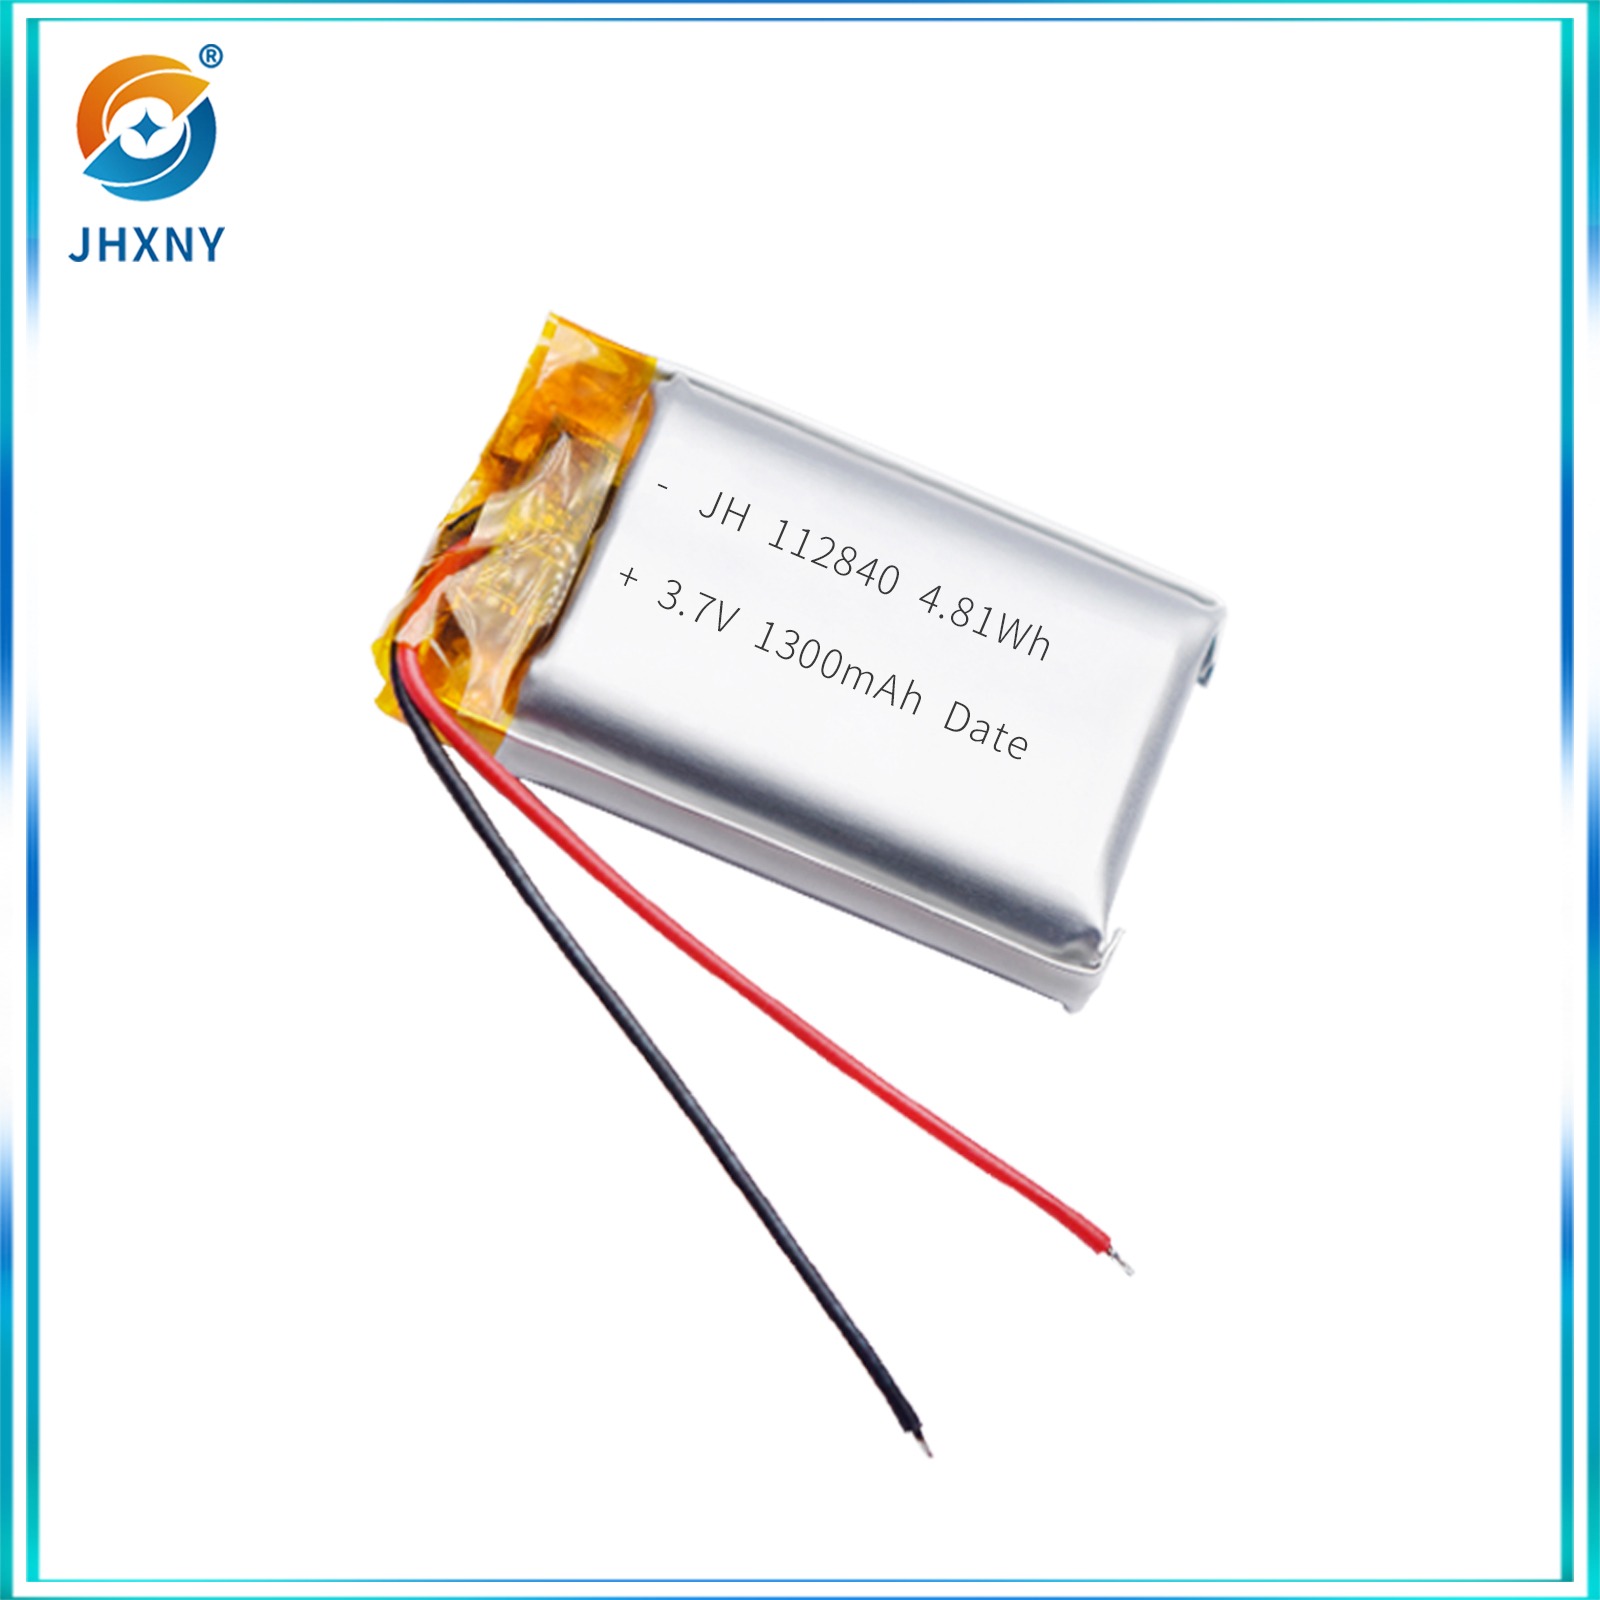 JH112840 3.7v1300mah batterie lithium polymère télécommande sans fil petit ventilateur PTZ stabilisateur casque de sécurité intelligent moustique répulsant lampe bâton lumineux